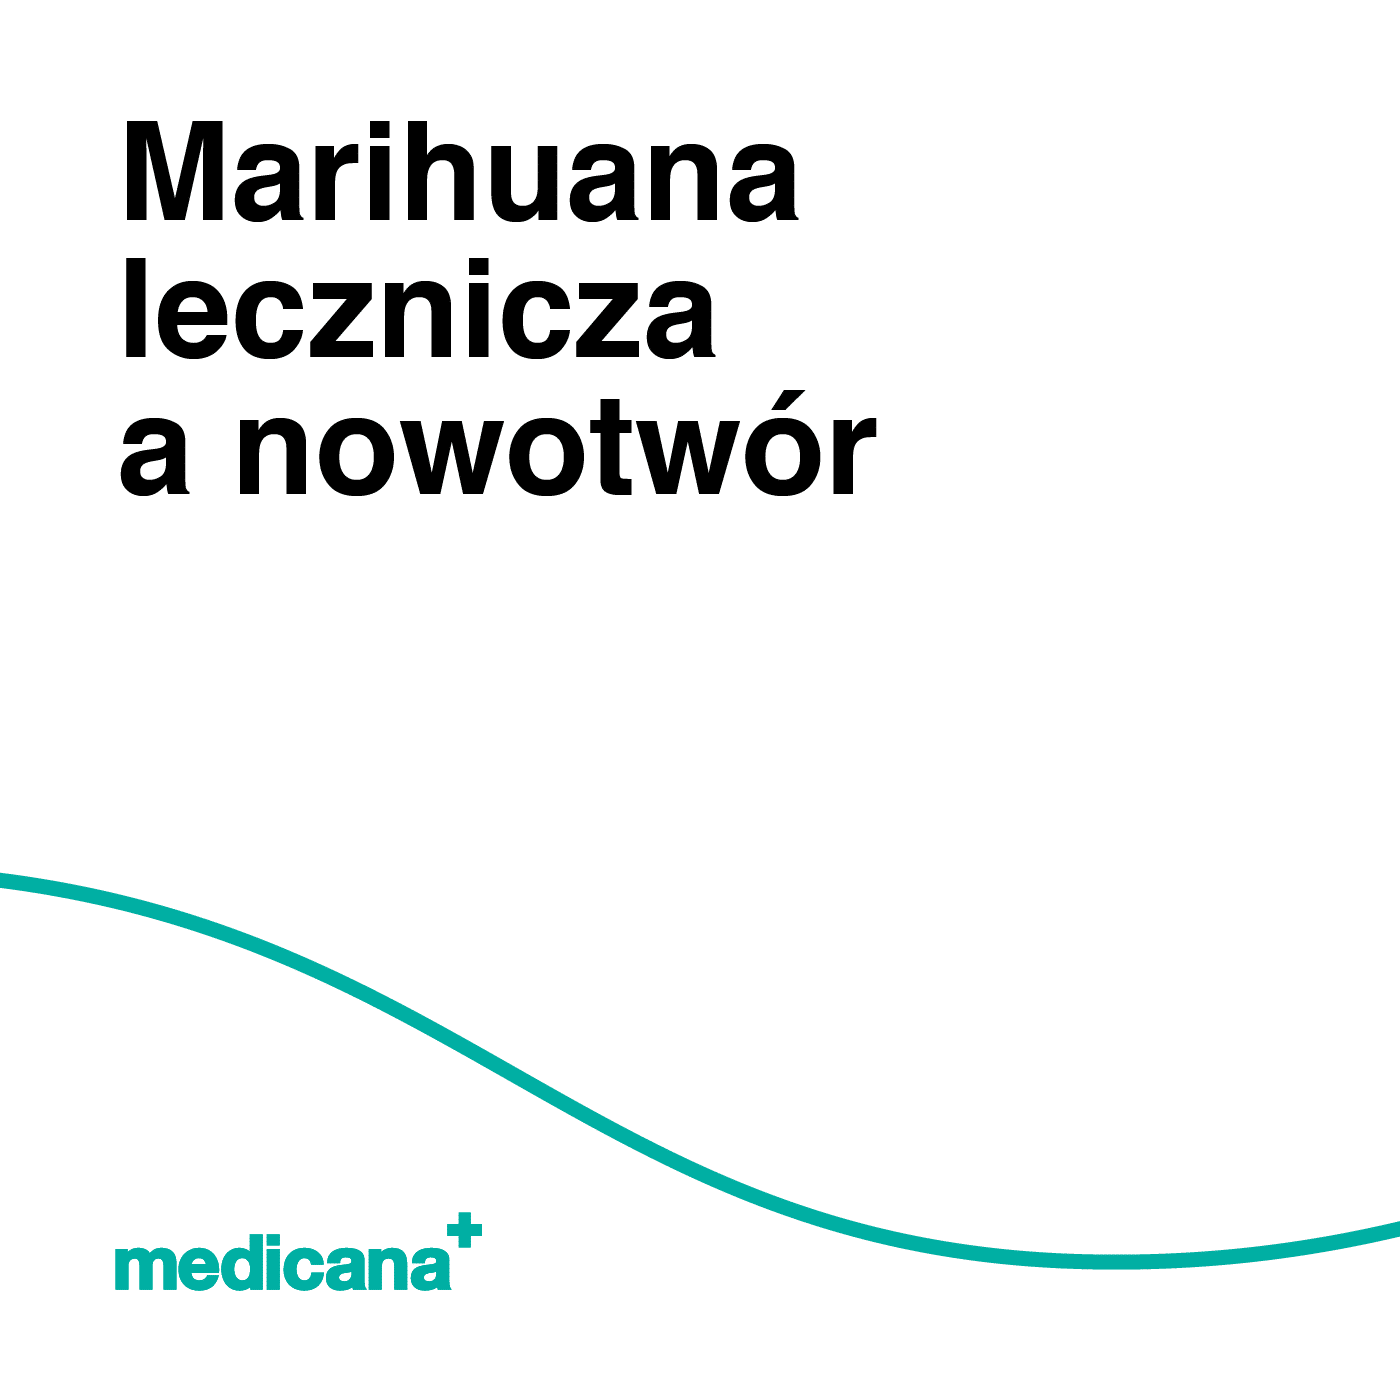 Grafika, białe tło z zieloną linią, czarnym napisem Konopie a nowotwory i logo Medicana Centrum Terapii Medyczna Marihuana w lewym dolnym rogu.